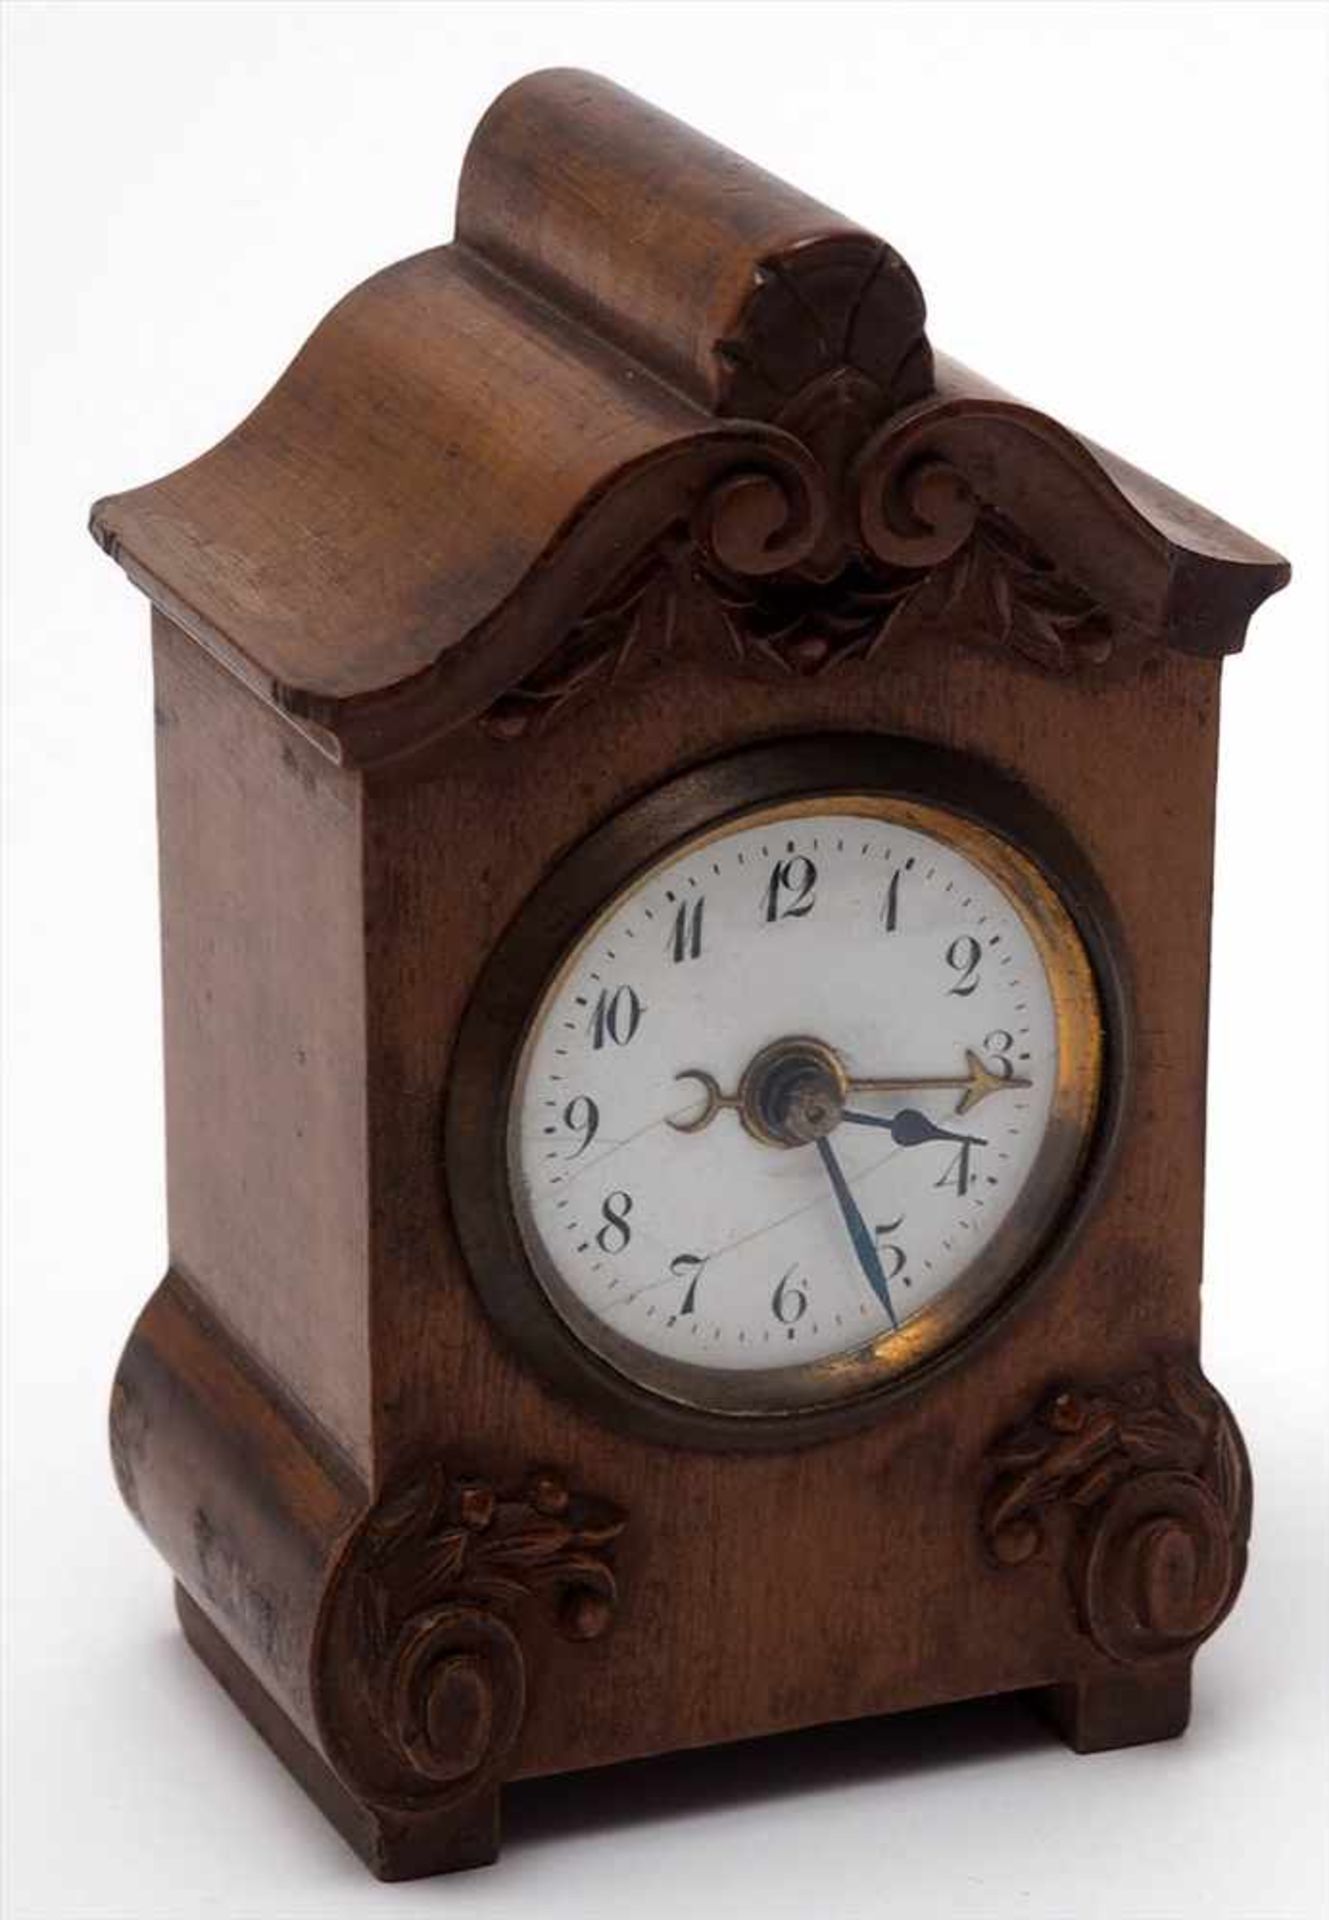 Wecker, um 1900Fein geschnitztes Nussbaumgehäuse mit eingelassener Uhrtrommel. Weißes